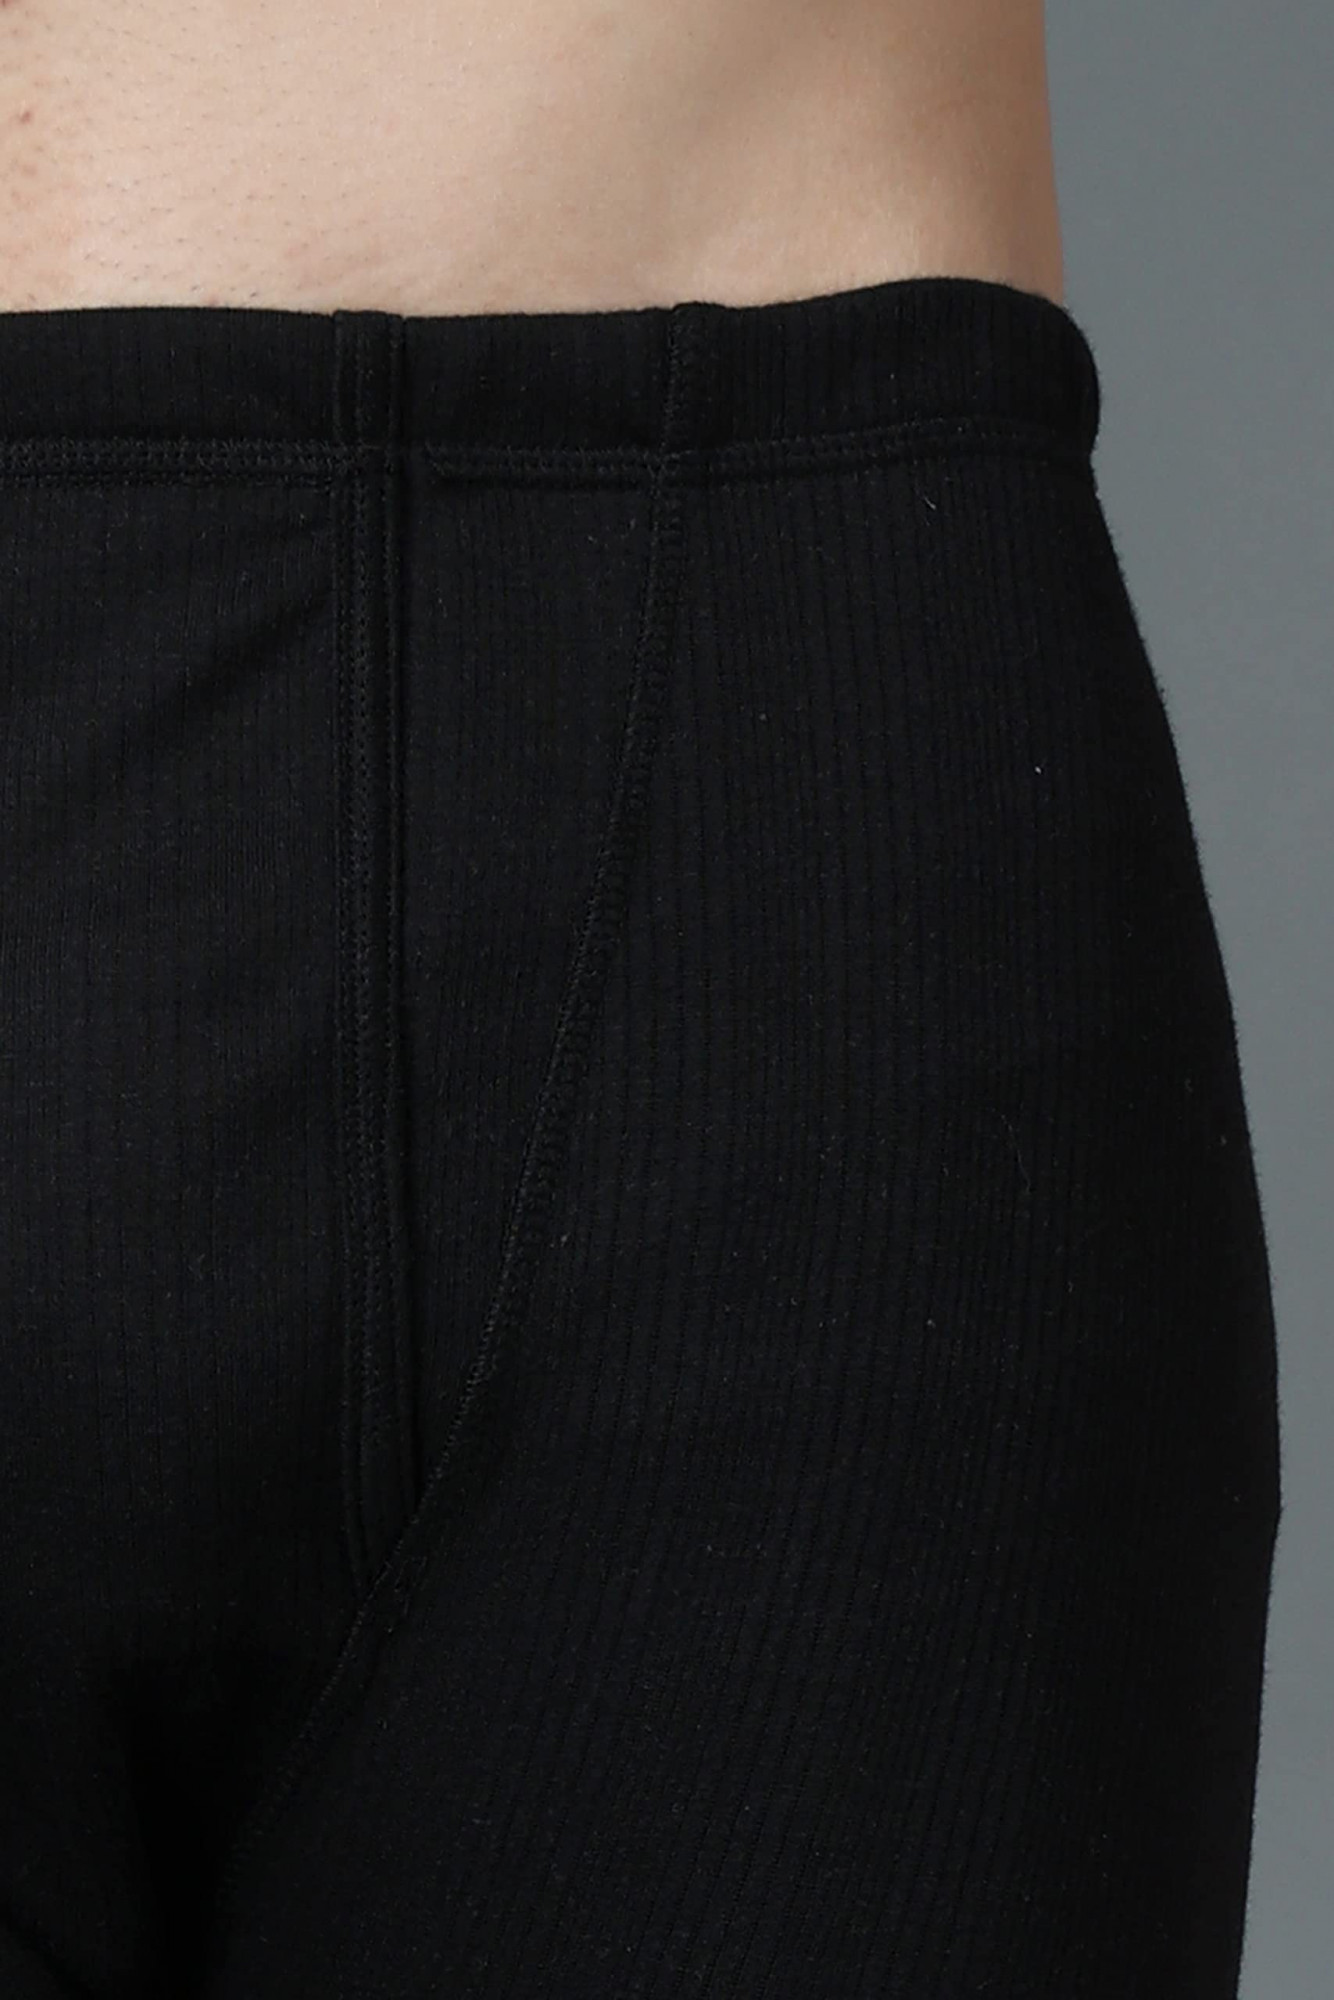 Wearslim® Premium Winter Thermal Bottom Underwear for Men